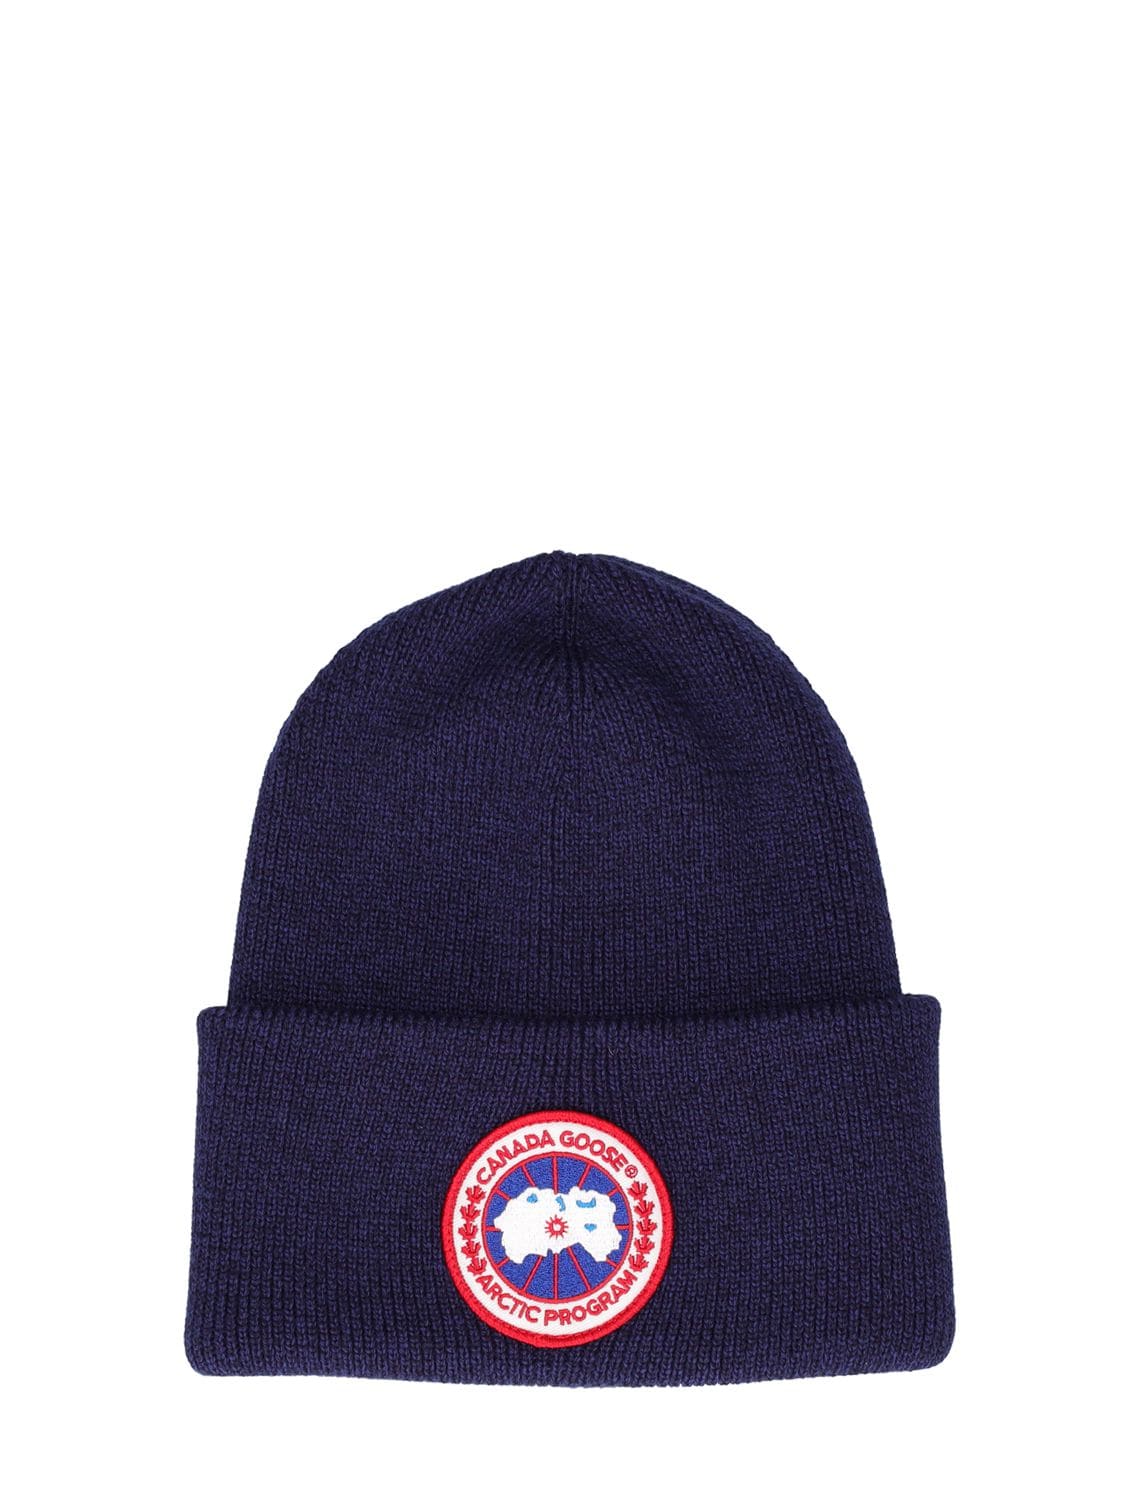 Canada Goose Arctic Disc Toque Wool Hat